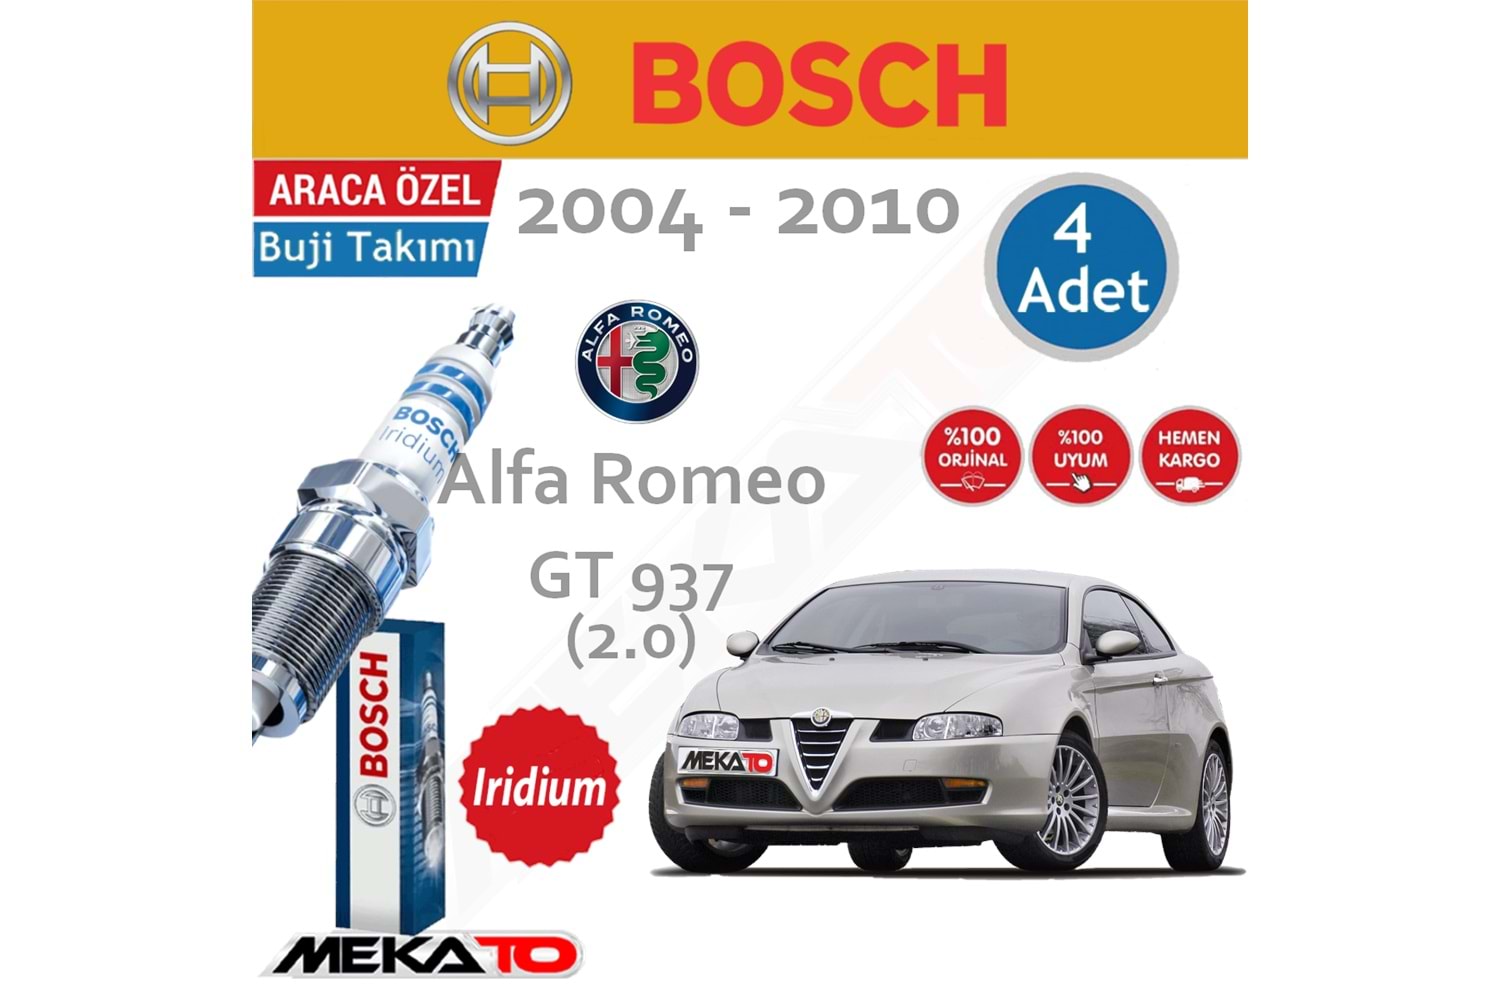 Bosch Alfa Romeo GT Lpg 2.0 İridyum Buji Takımı 2004-2010 4 Ad.